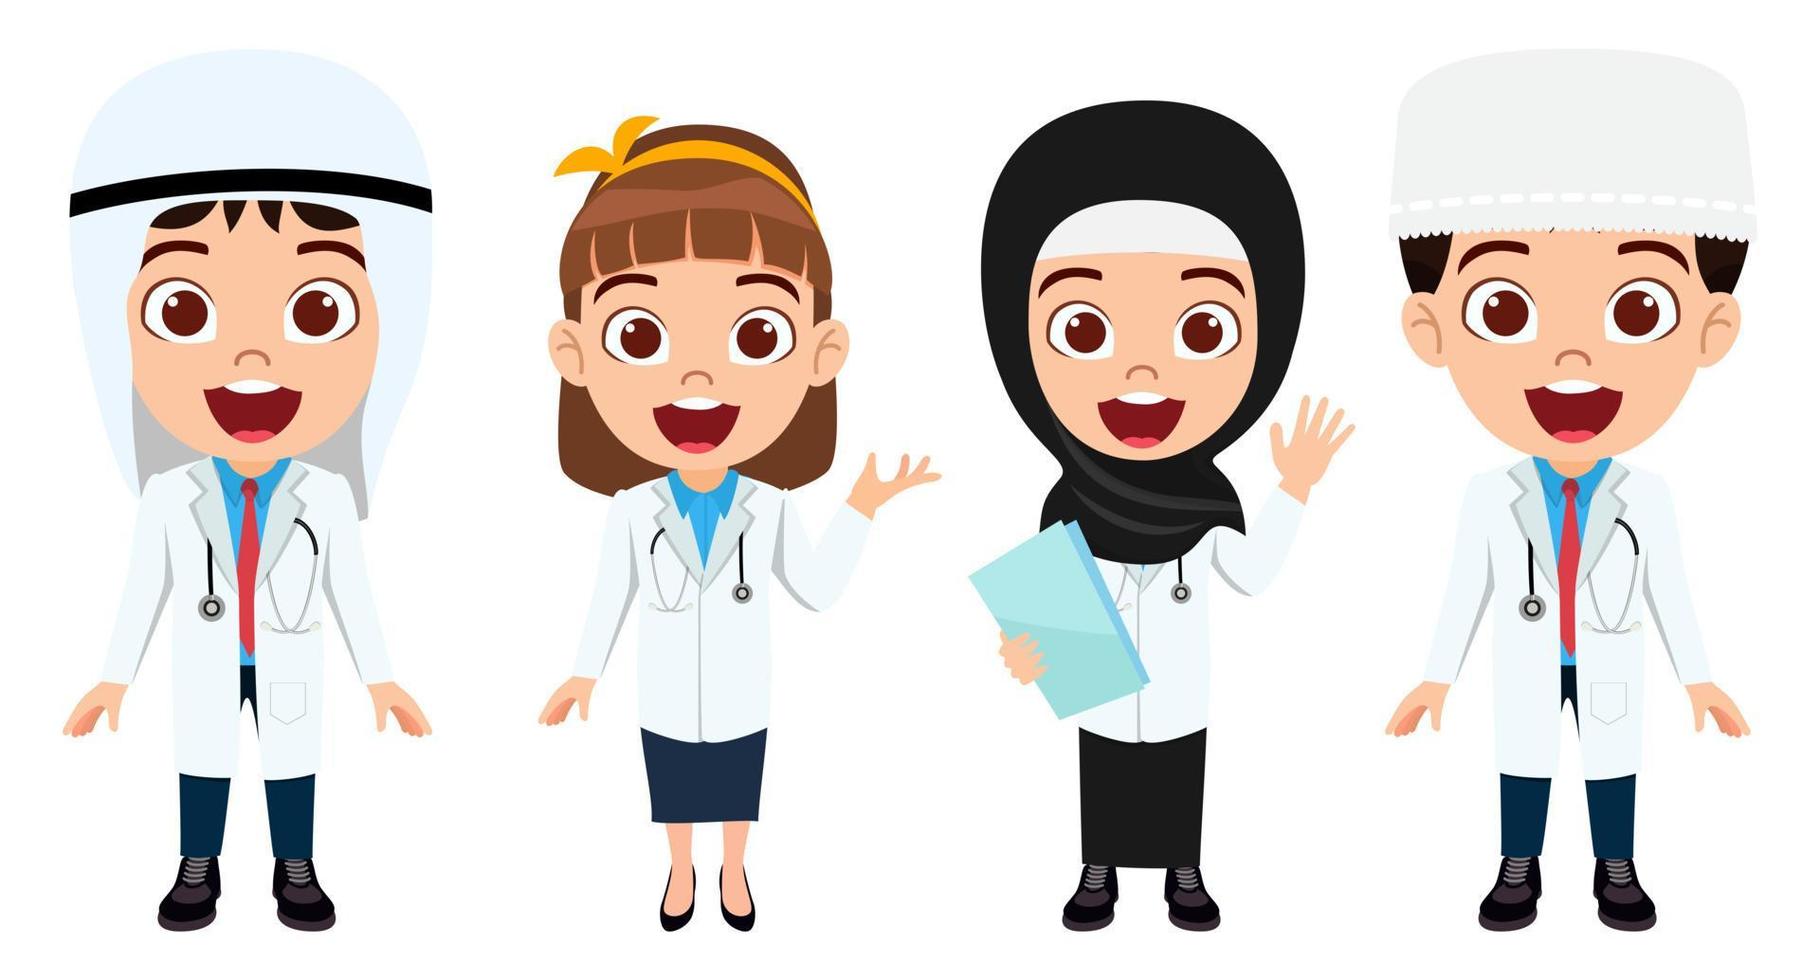 felice ragazzo carino ragazzo e ragazza dottore infermiere personaggio che indossa un medico arabo musulmano e un abito da infermiere in piedi con espressione allegra isolata vettore